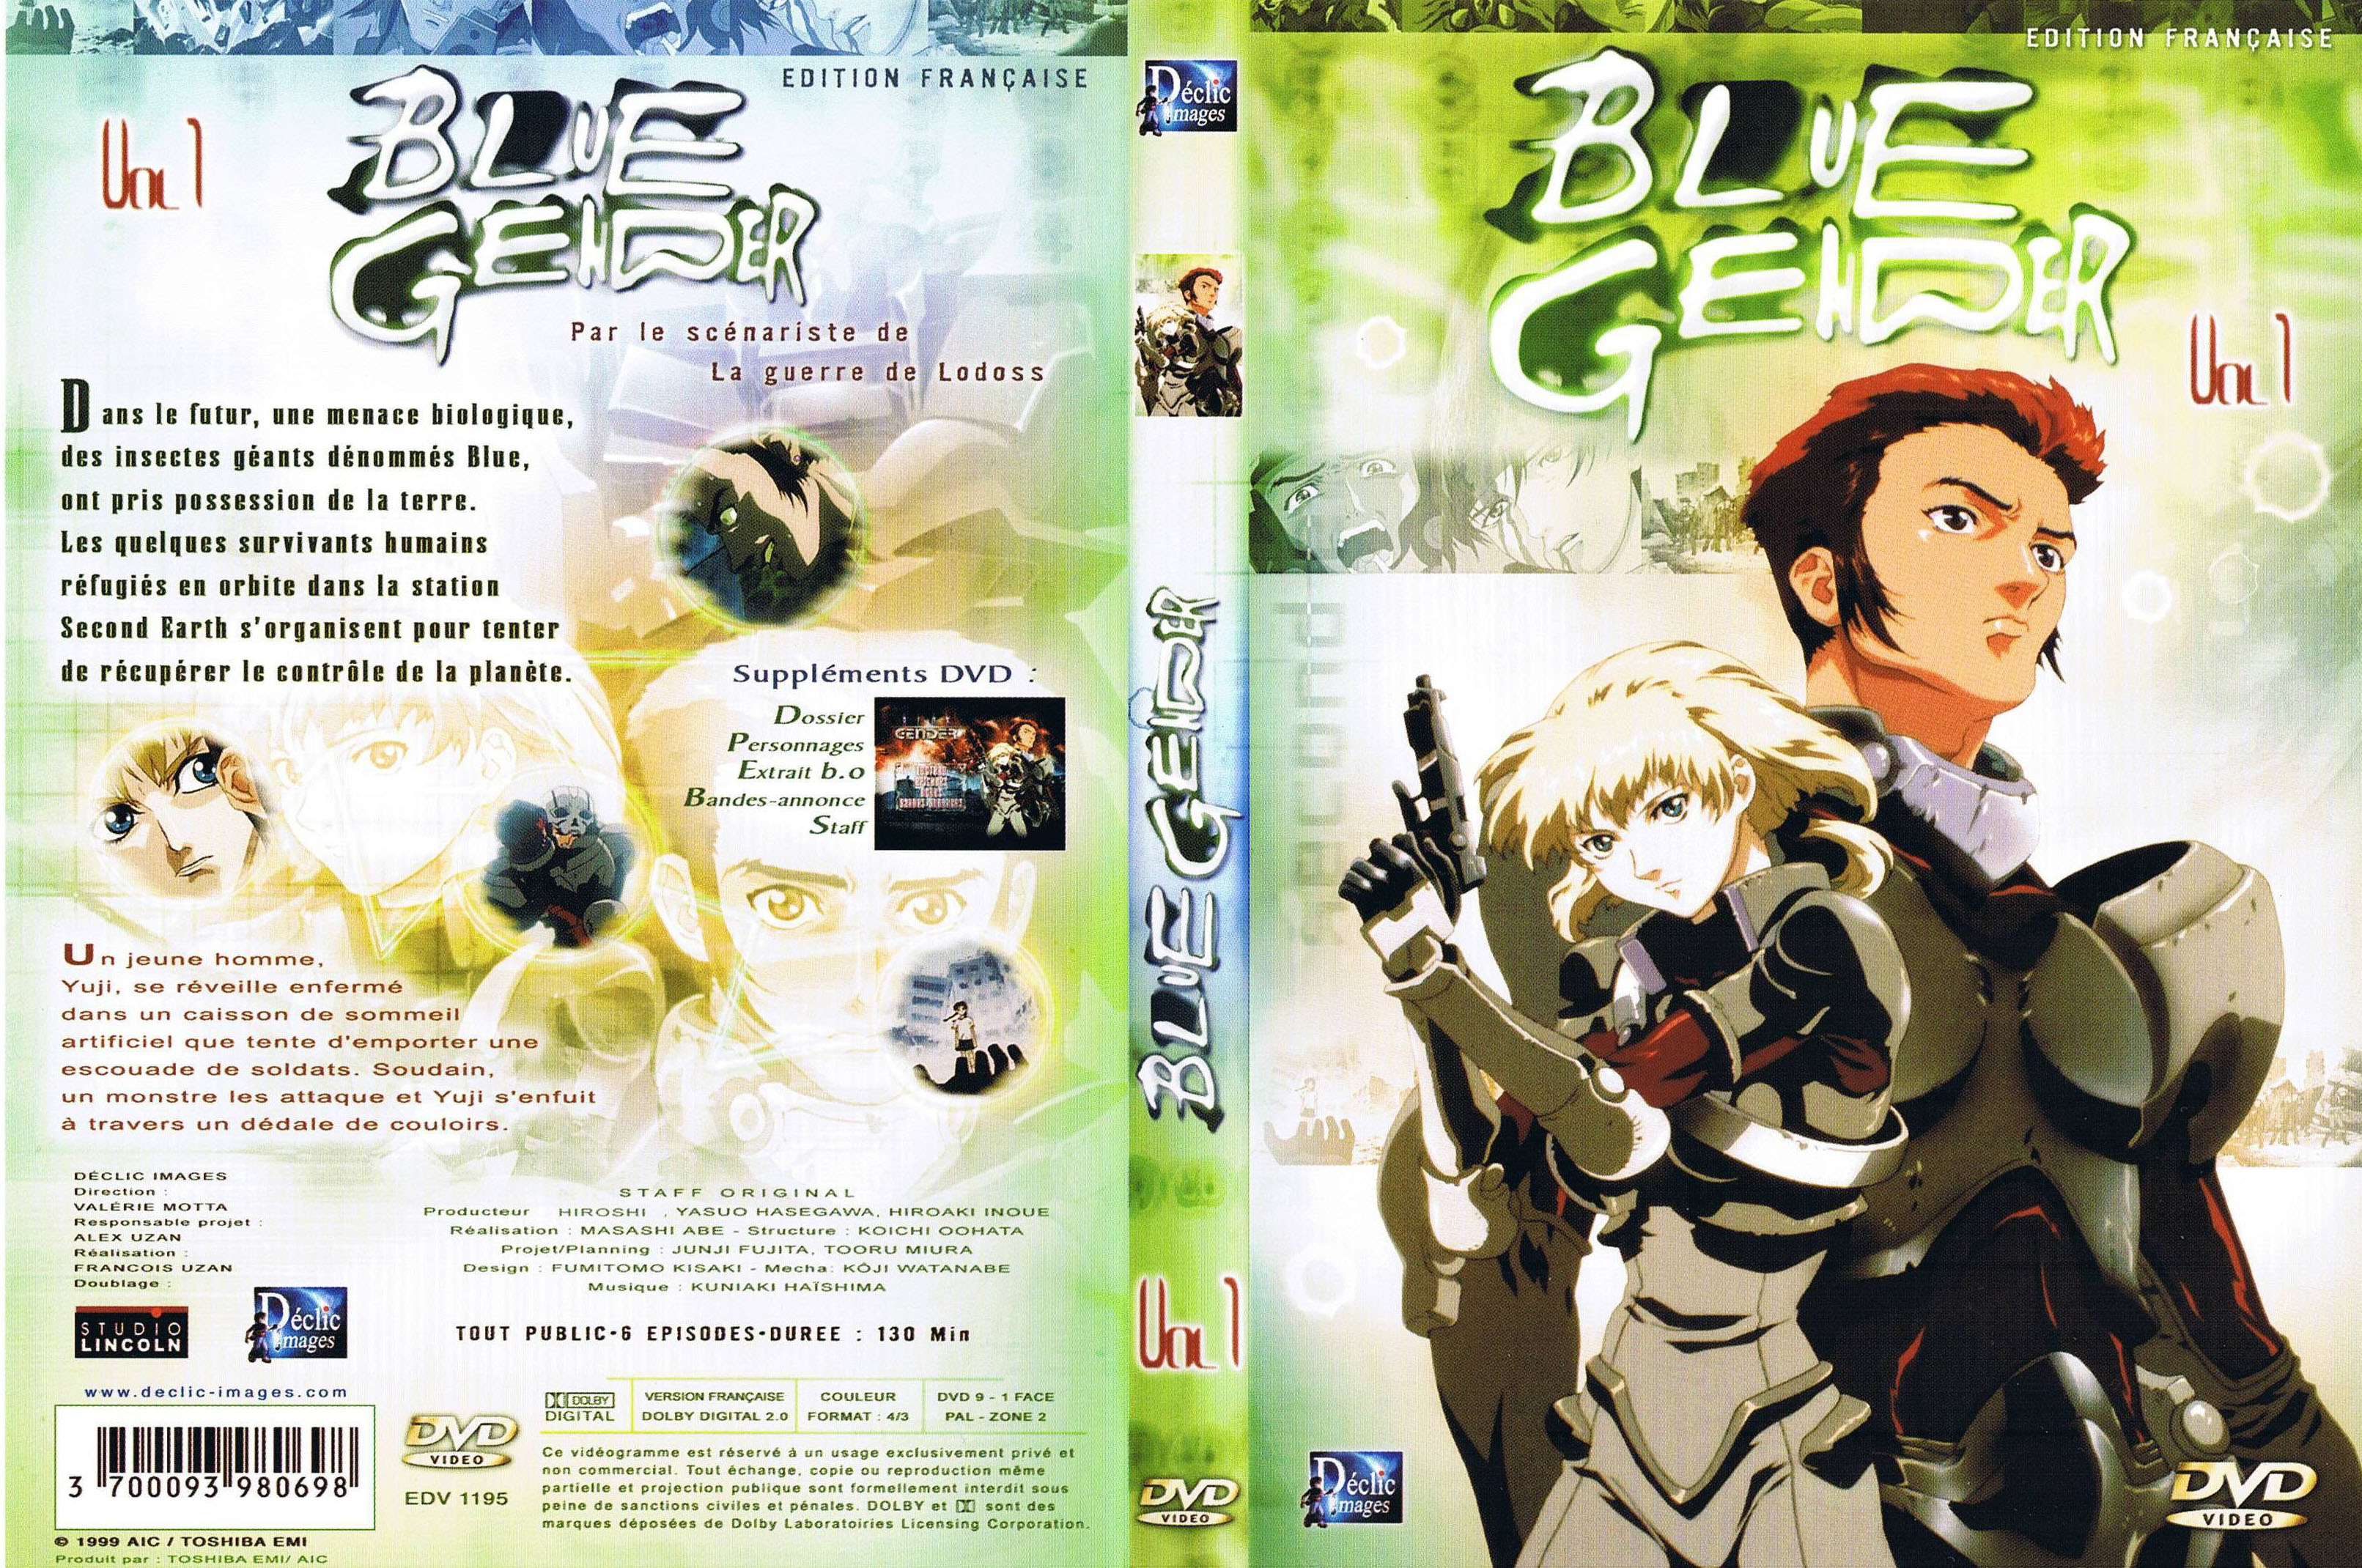 Jaquette DVD Blue Gender vol 1